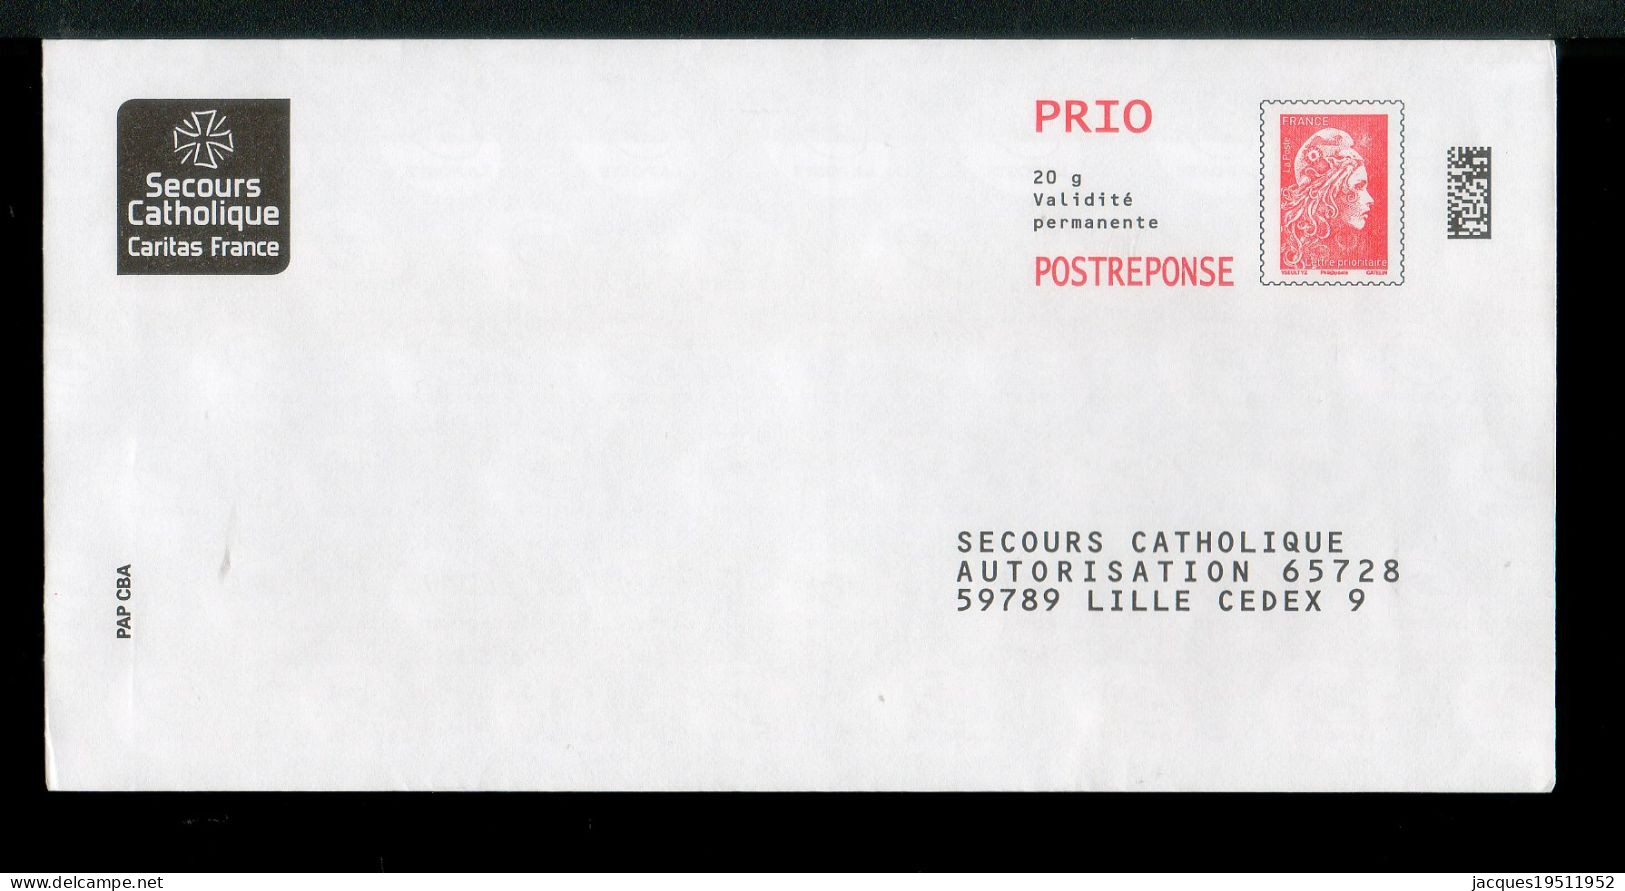 NJ-180 - Yzeult YZ (PRIO) - Secours Catholique - N° 232063 - Prêts-à-poster: Réponse /Marianne L'Engagée